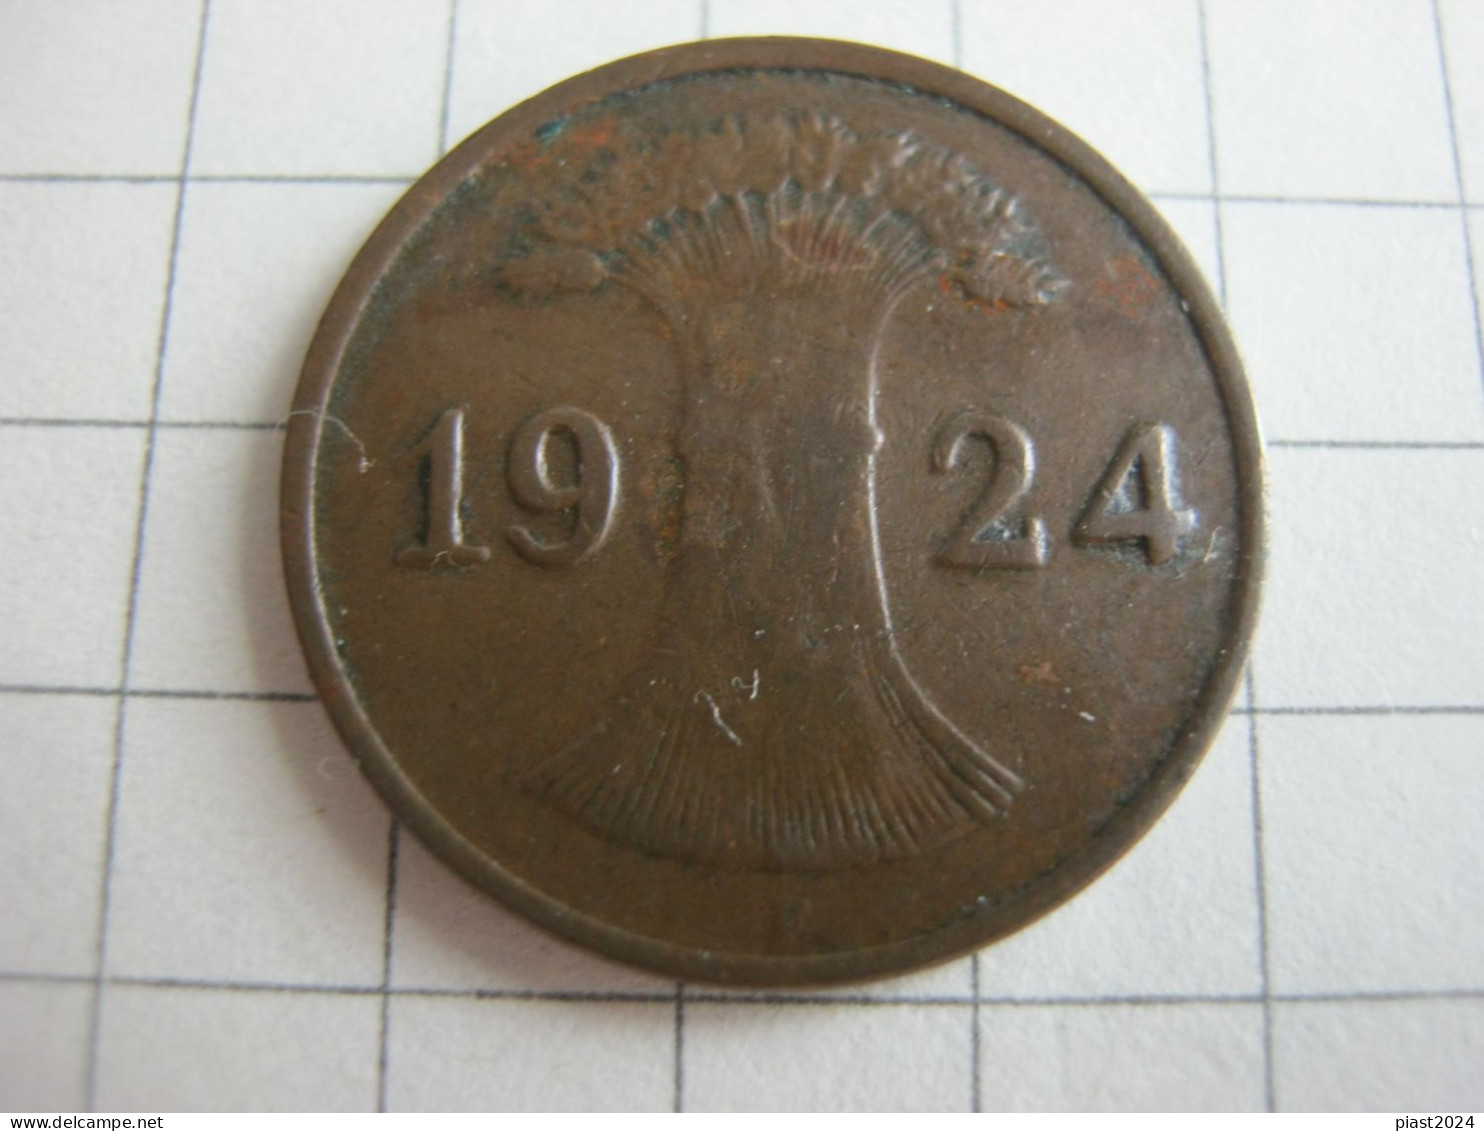 Germany 1 Rentenpfennig 1924 F - 1 Rentenpfennig & 1 Reichspfennig